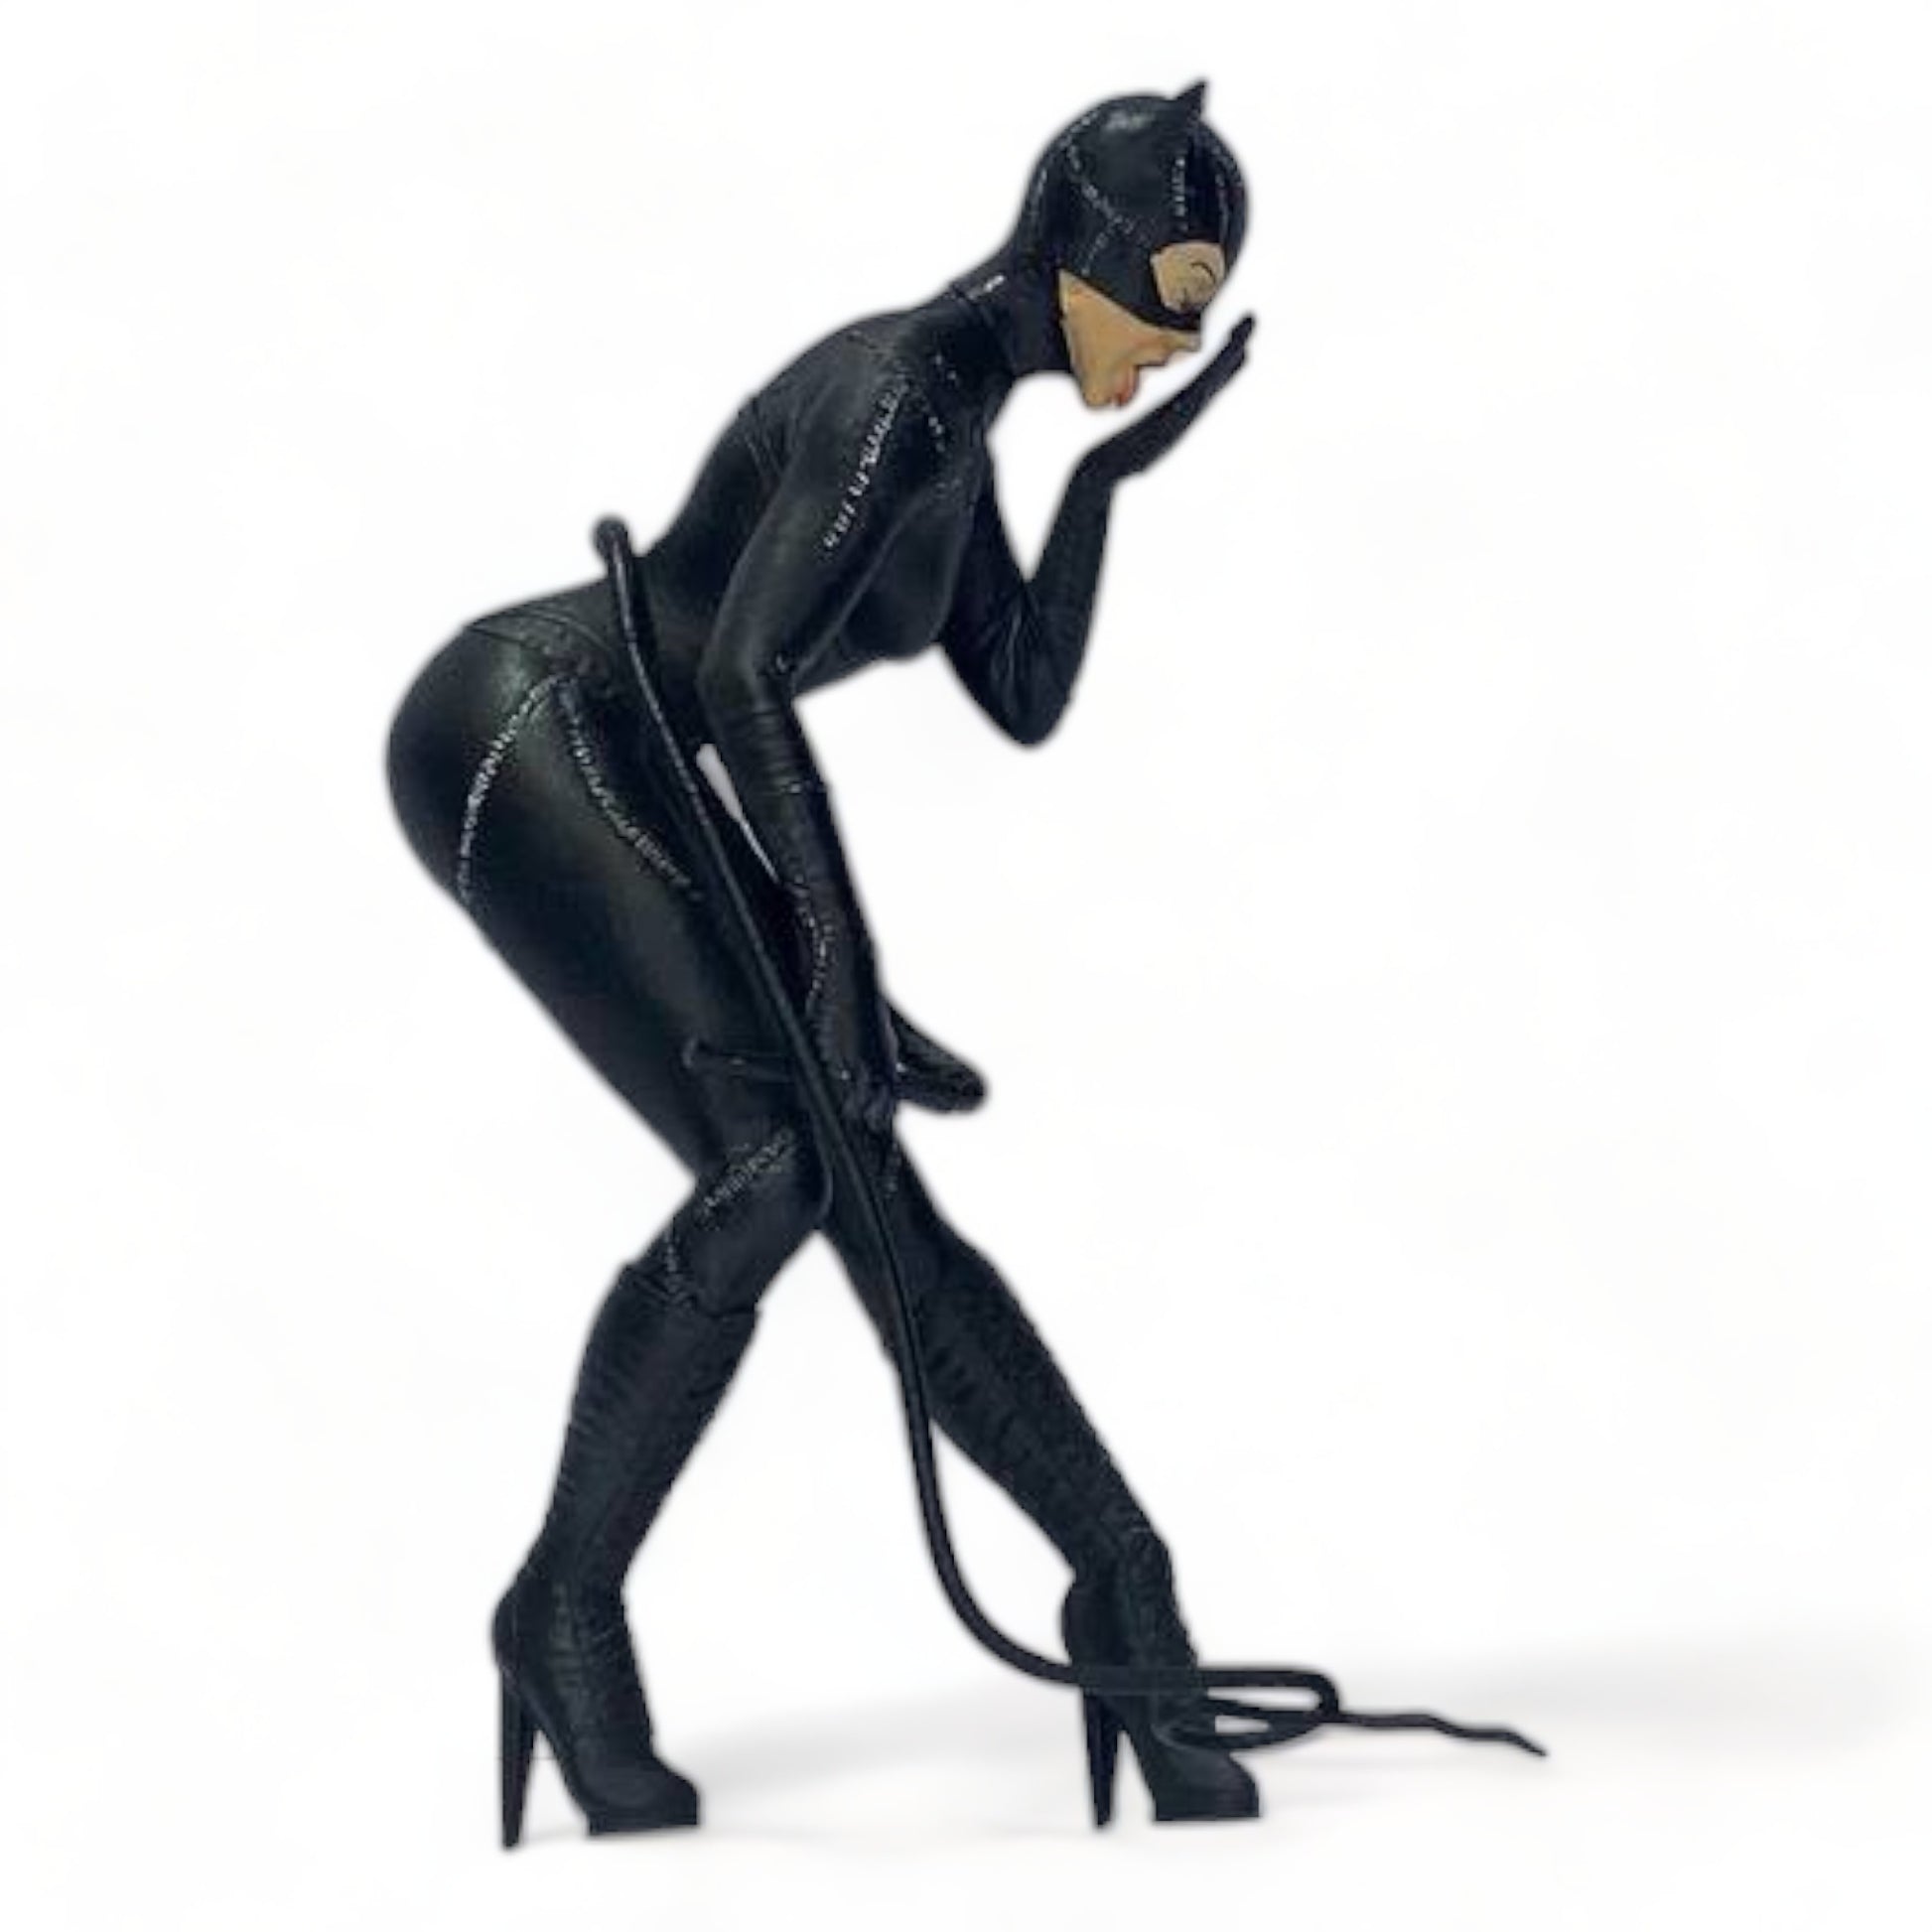 1/18 Scale Figure Set - Catwoman Figures|Sold in Dturman.com Dubai UAE.